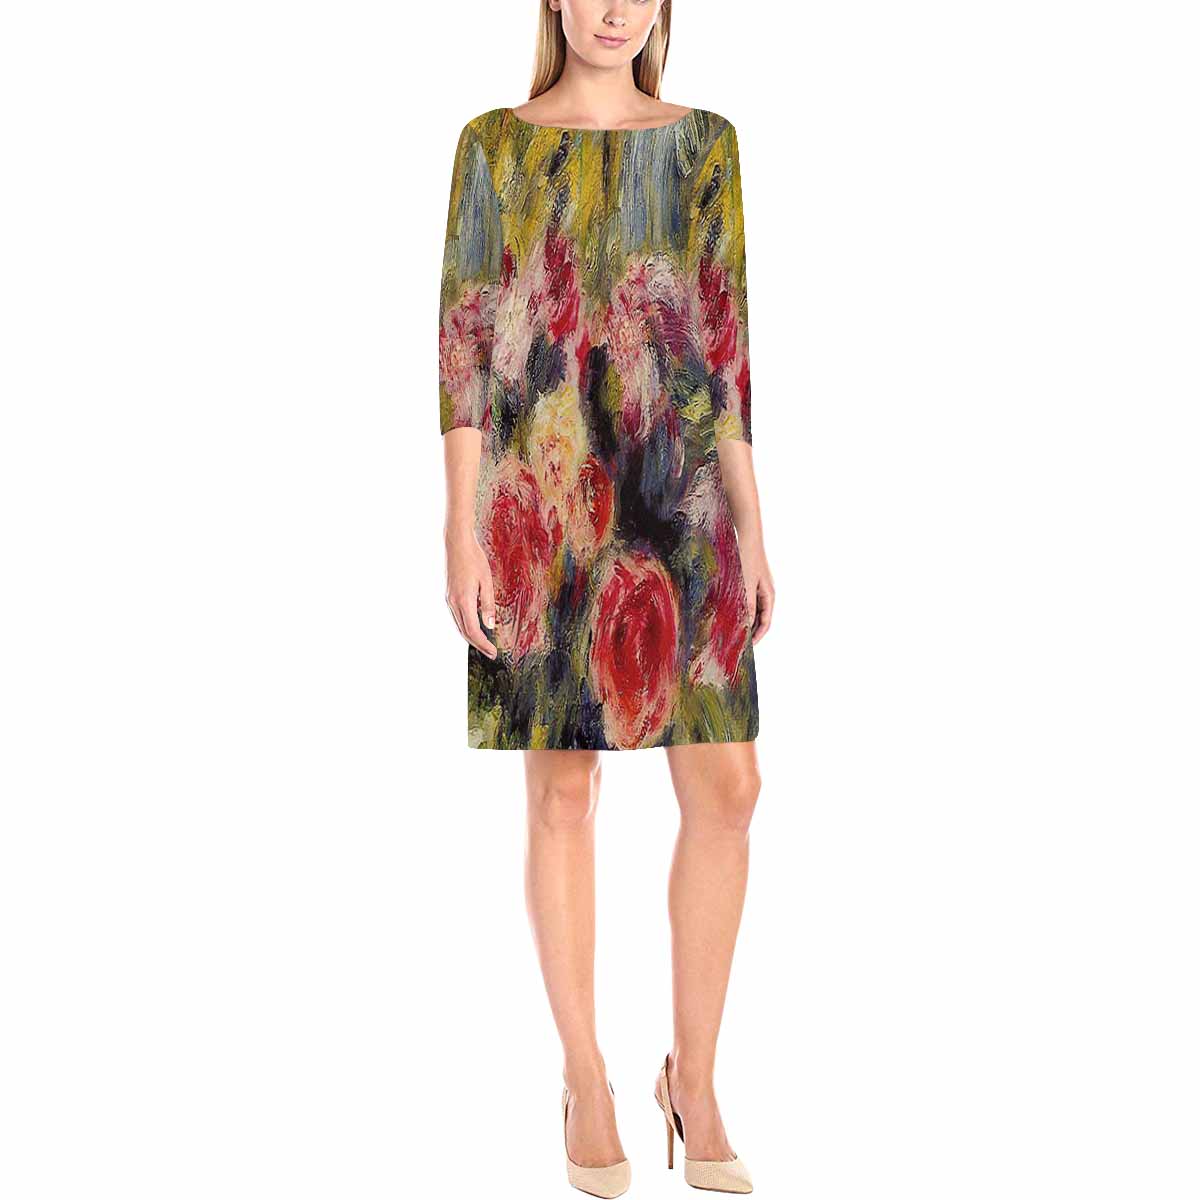 Vintage floral loose dress, model D29532 Design 26